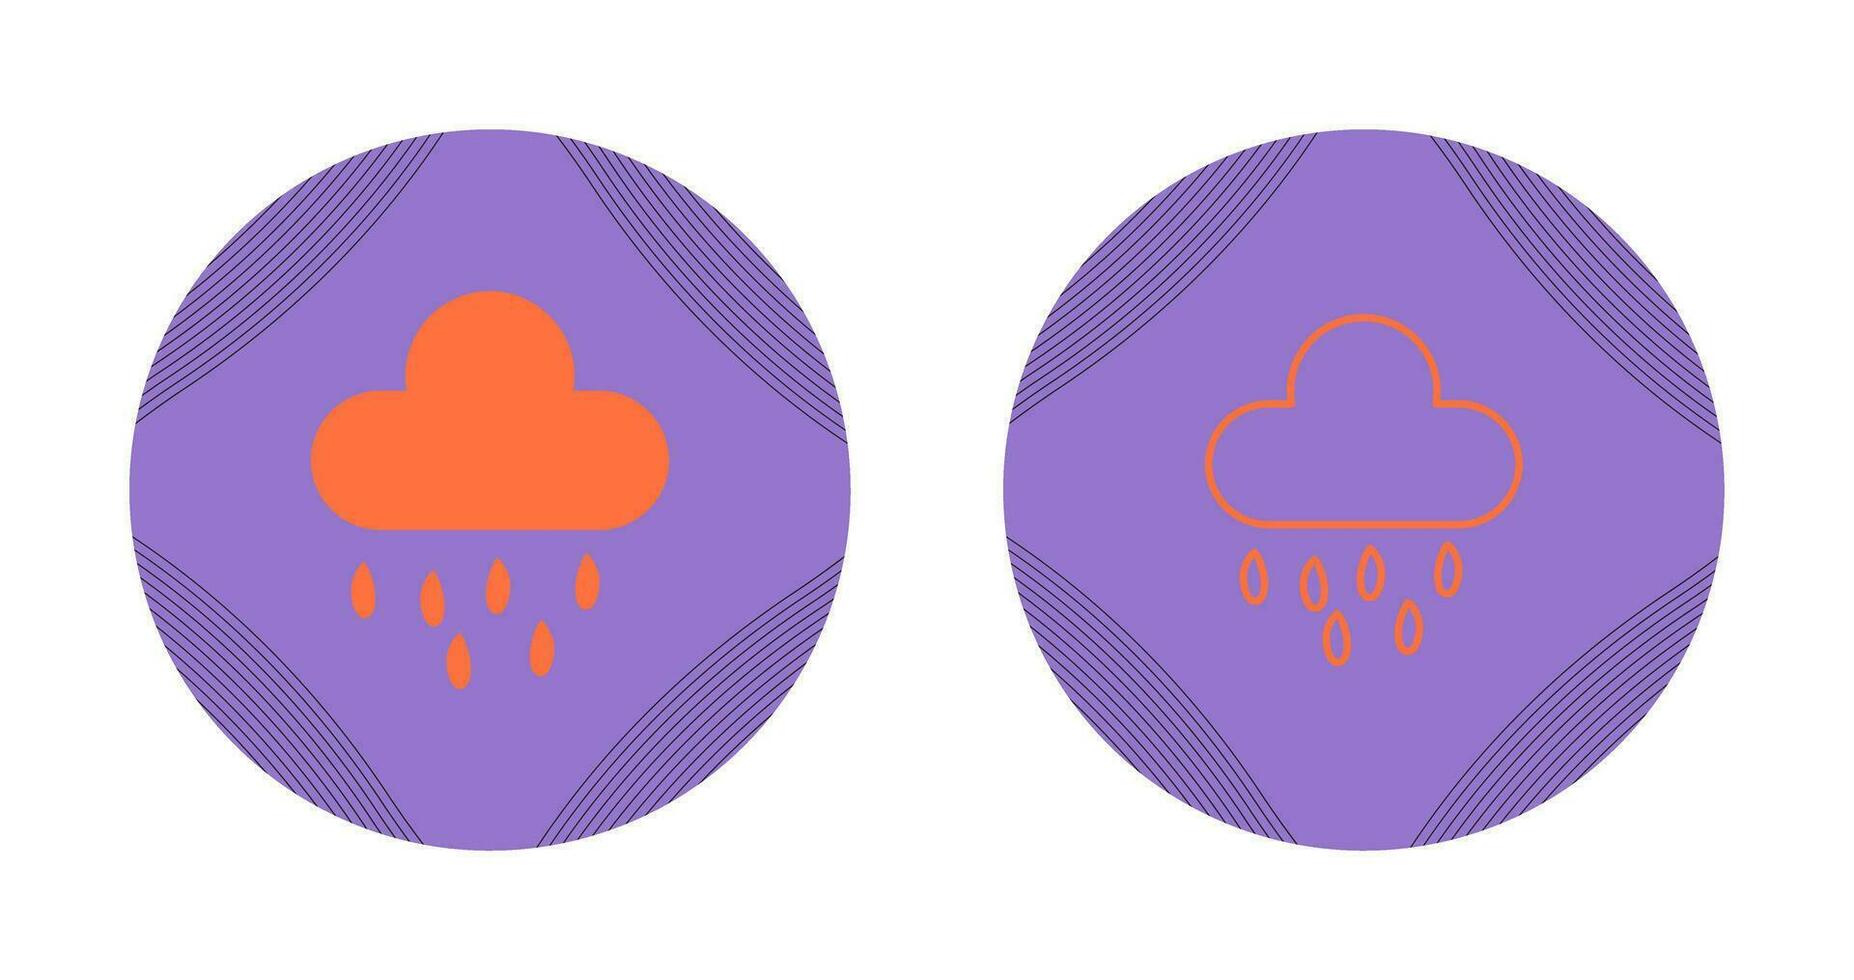 ícone de vetor de nuvem de chuva